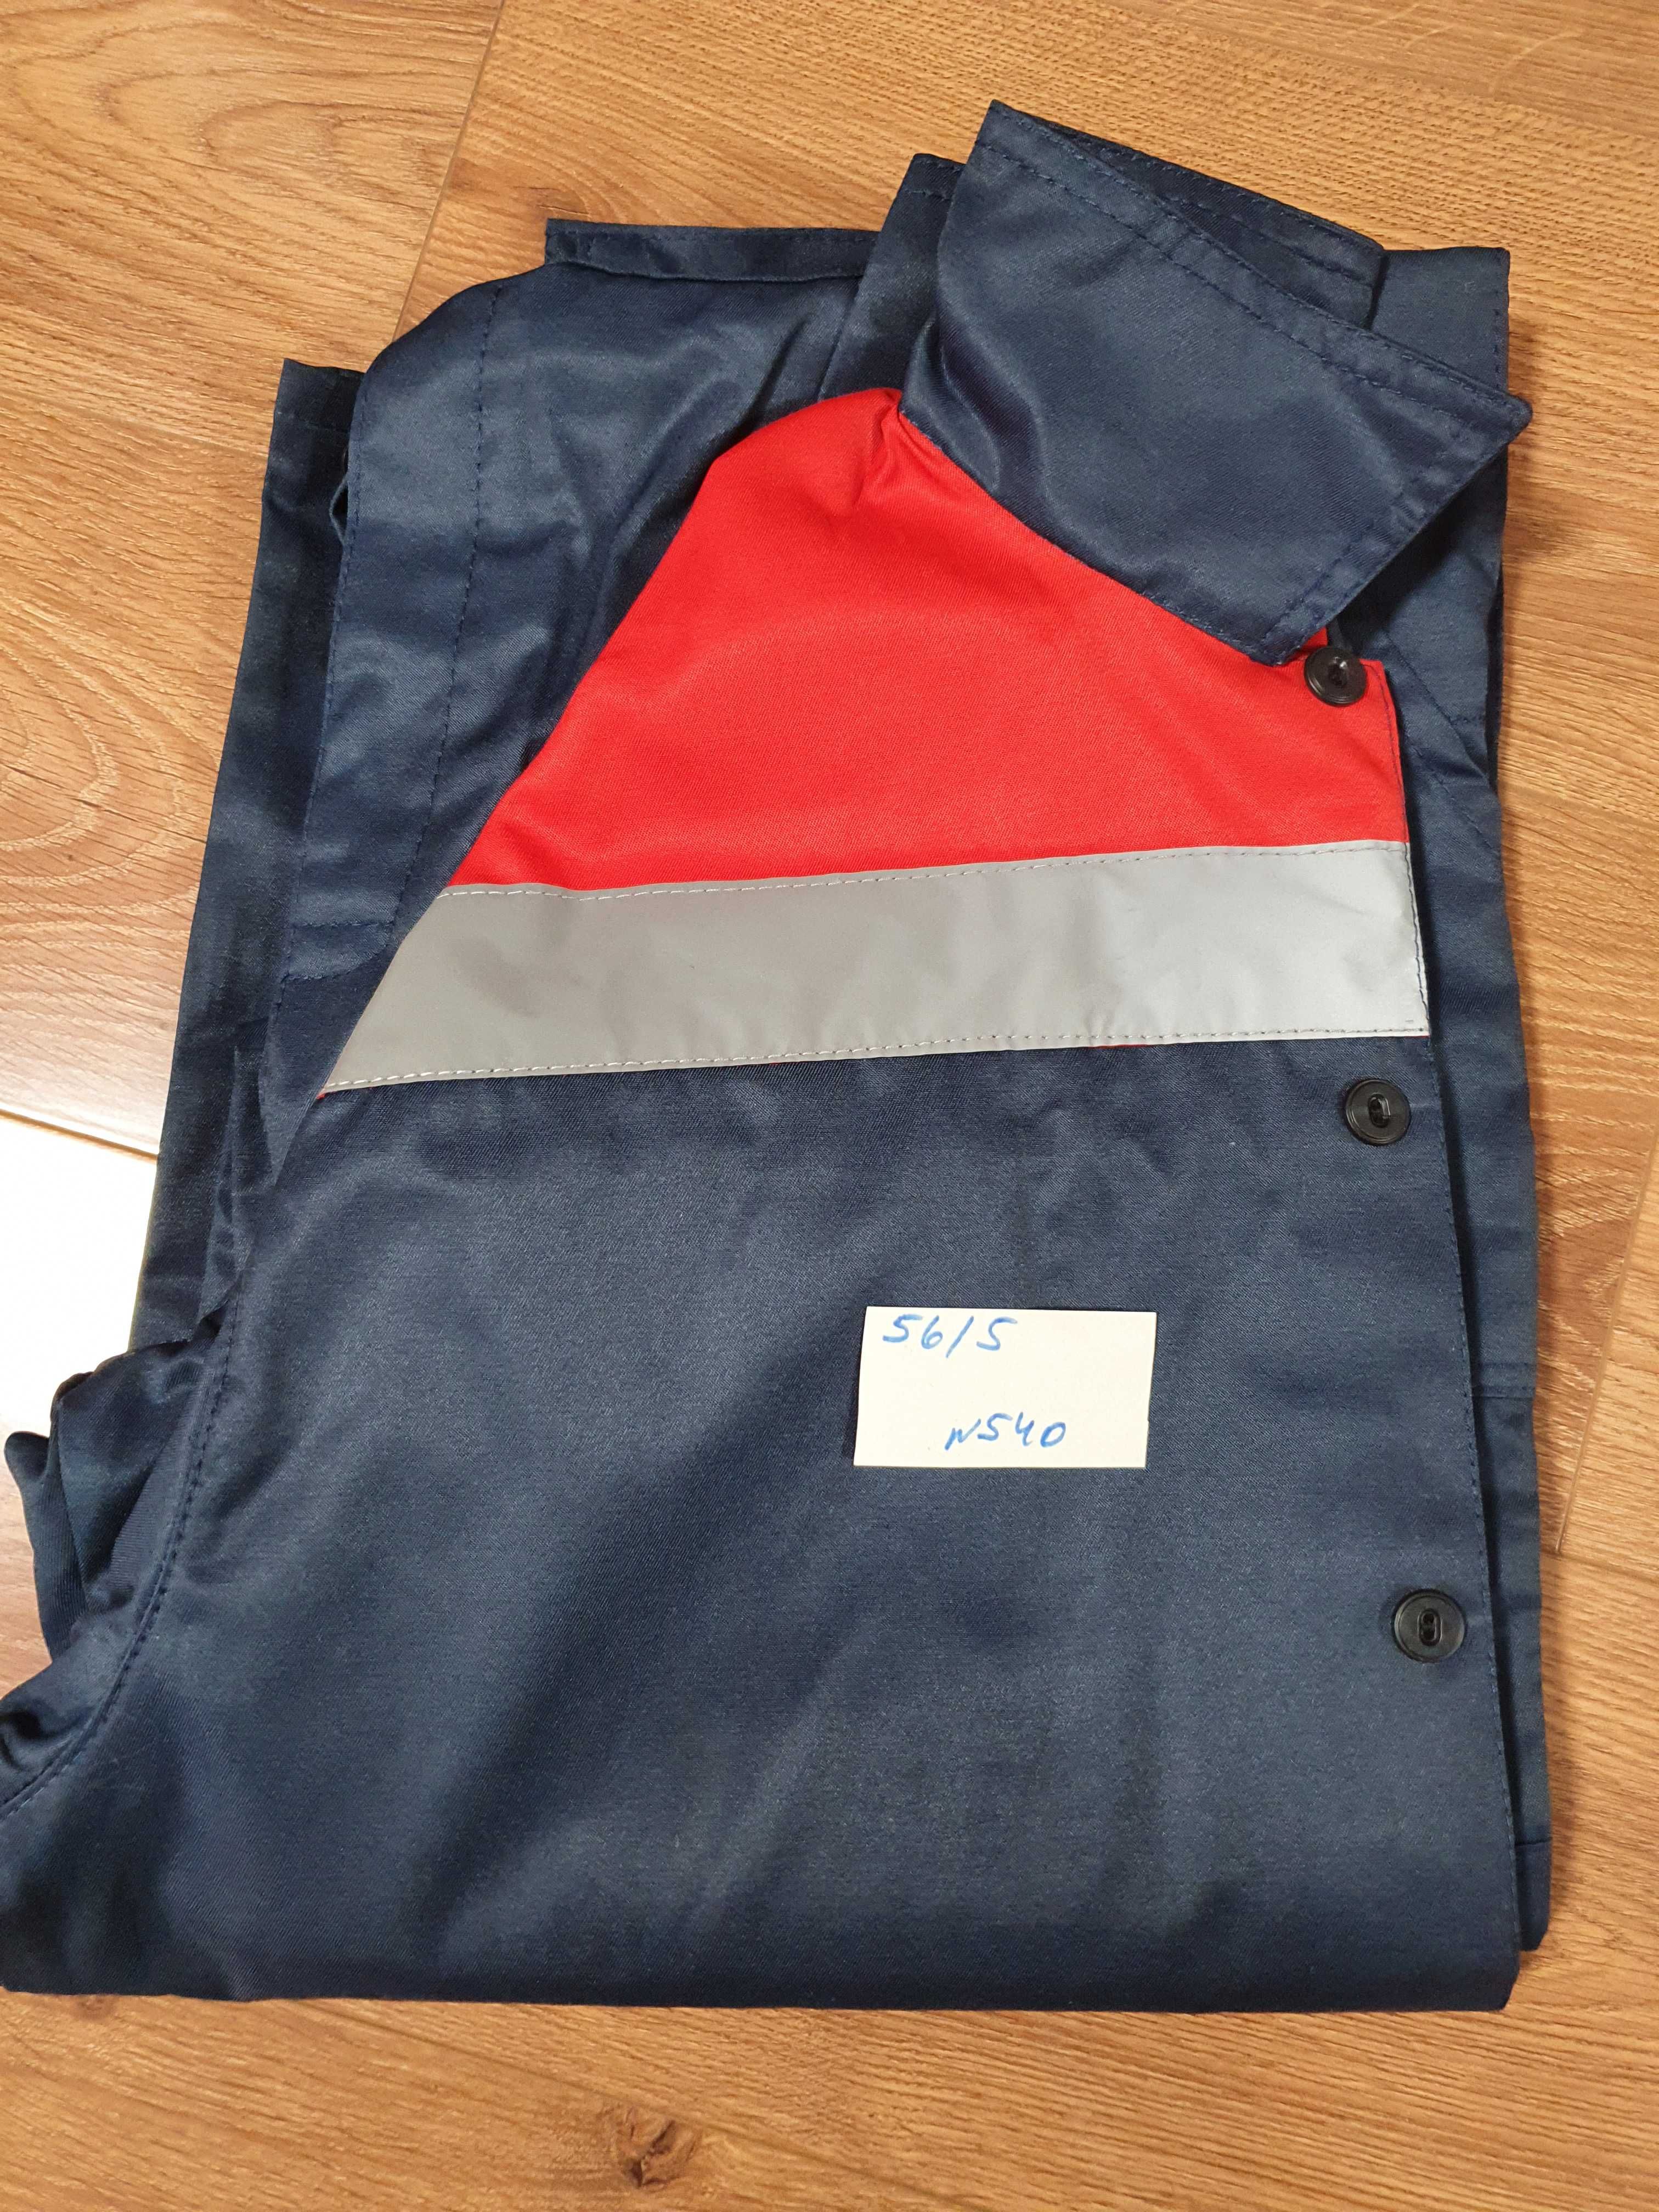 Комплект спецодежды для мужчин. Куртка + полукомбинезон. Размер 56/5